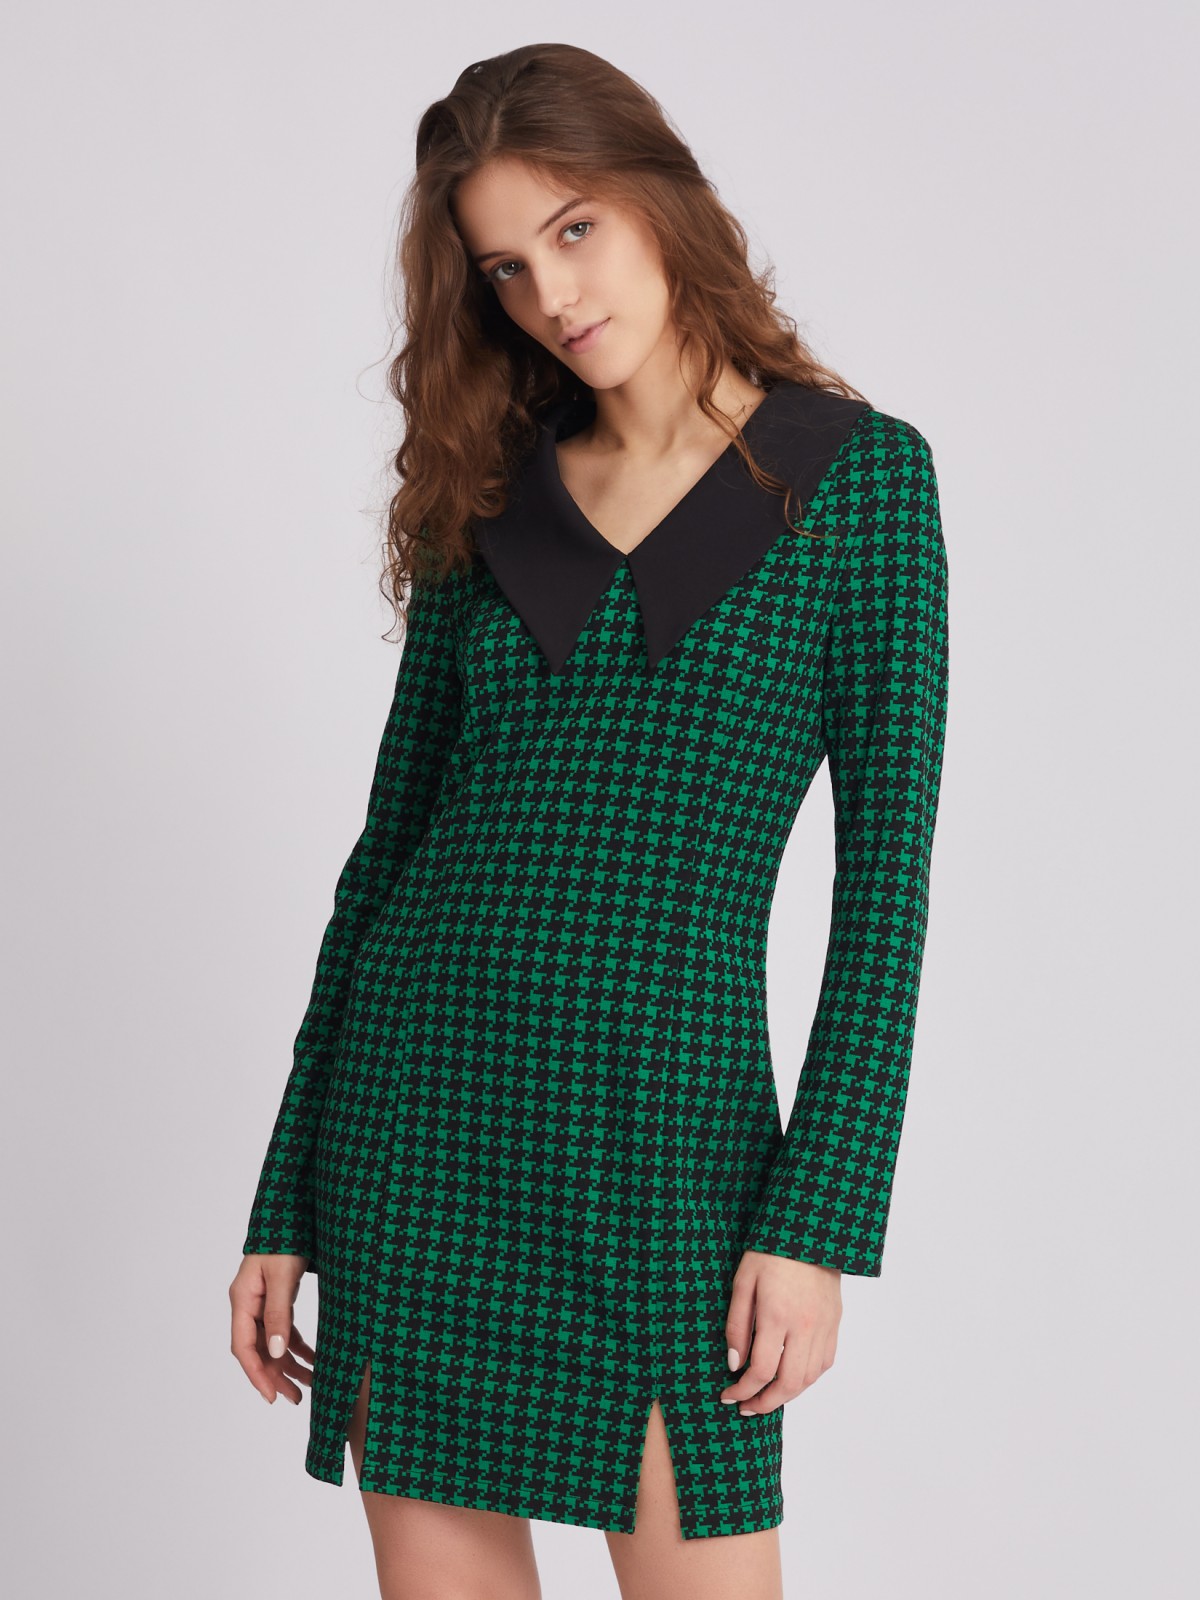 Трикотажное платье длины мини с акцентным воротником и разрезами на подоле zolla 023338139141, цвет зеленый, размер S